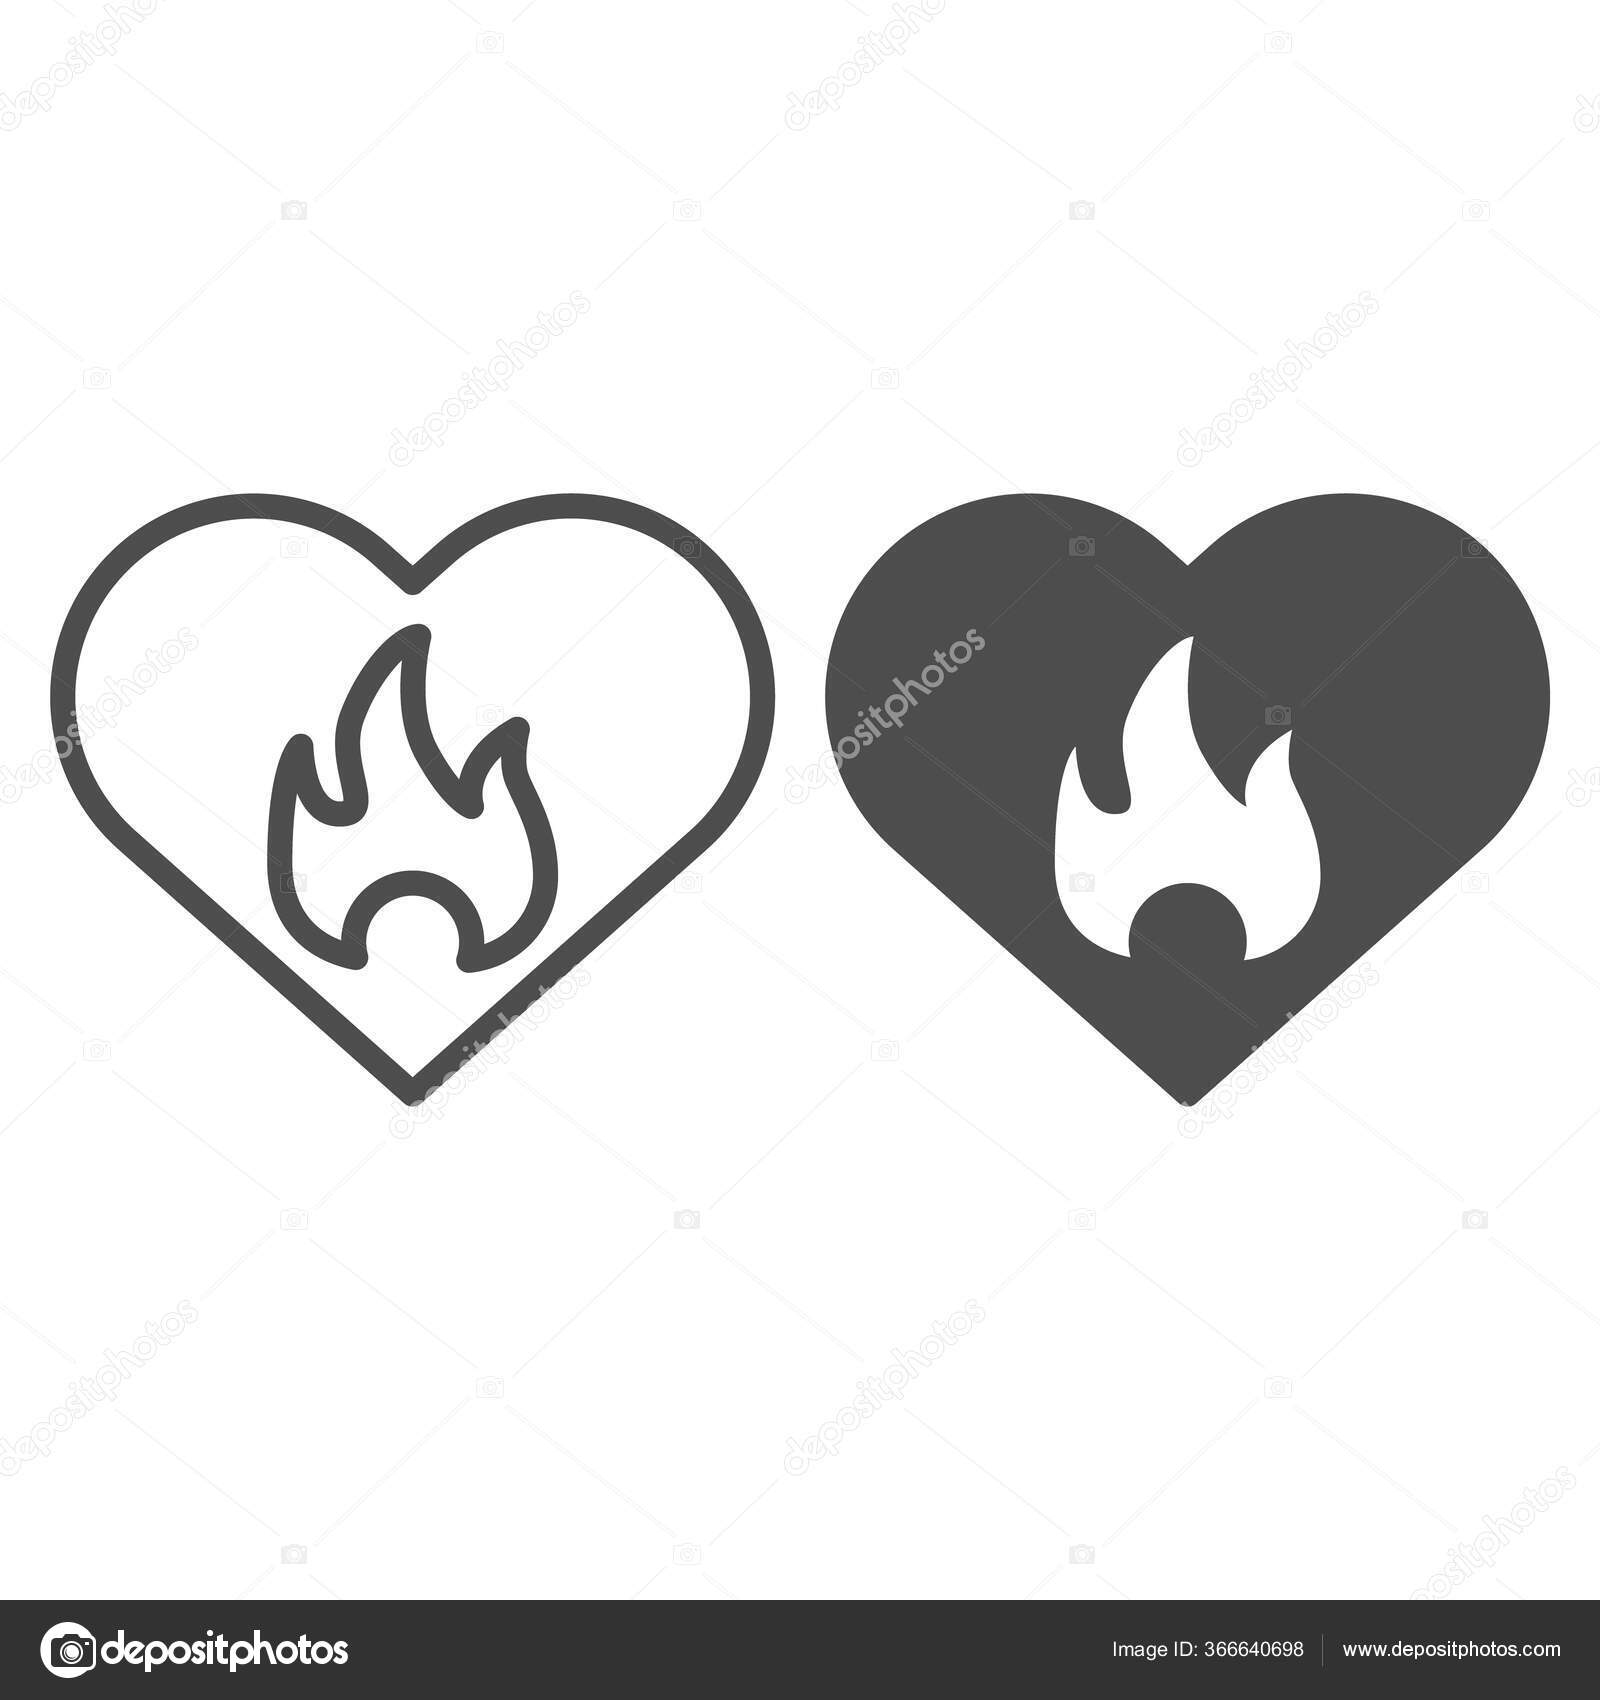 Símbolo do ícone do logotipo do fogo da chama V25 quente